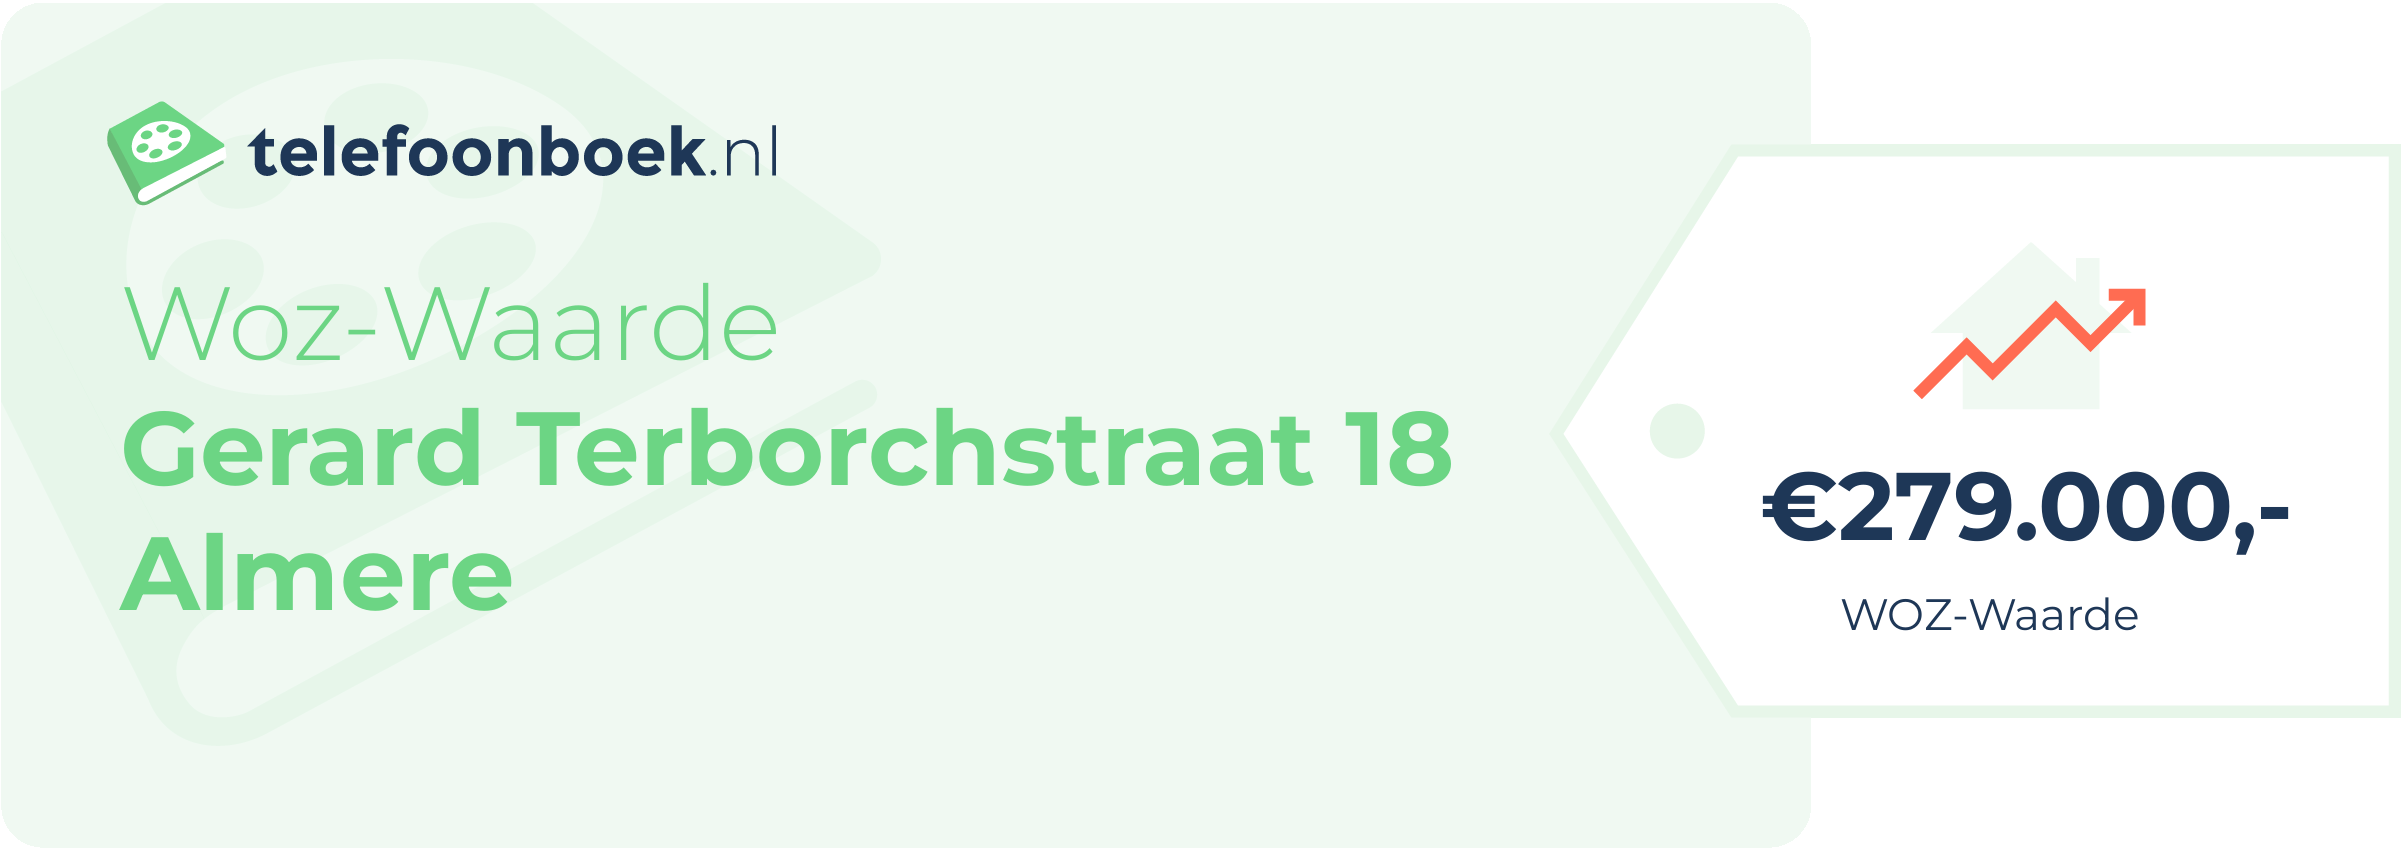 WOZ-waarde Gerard Terborchstraat 18 Almere